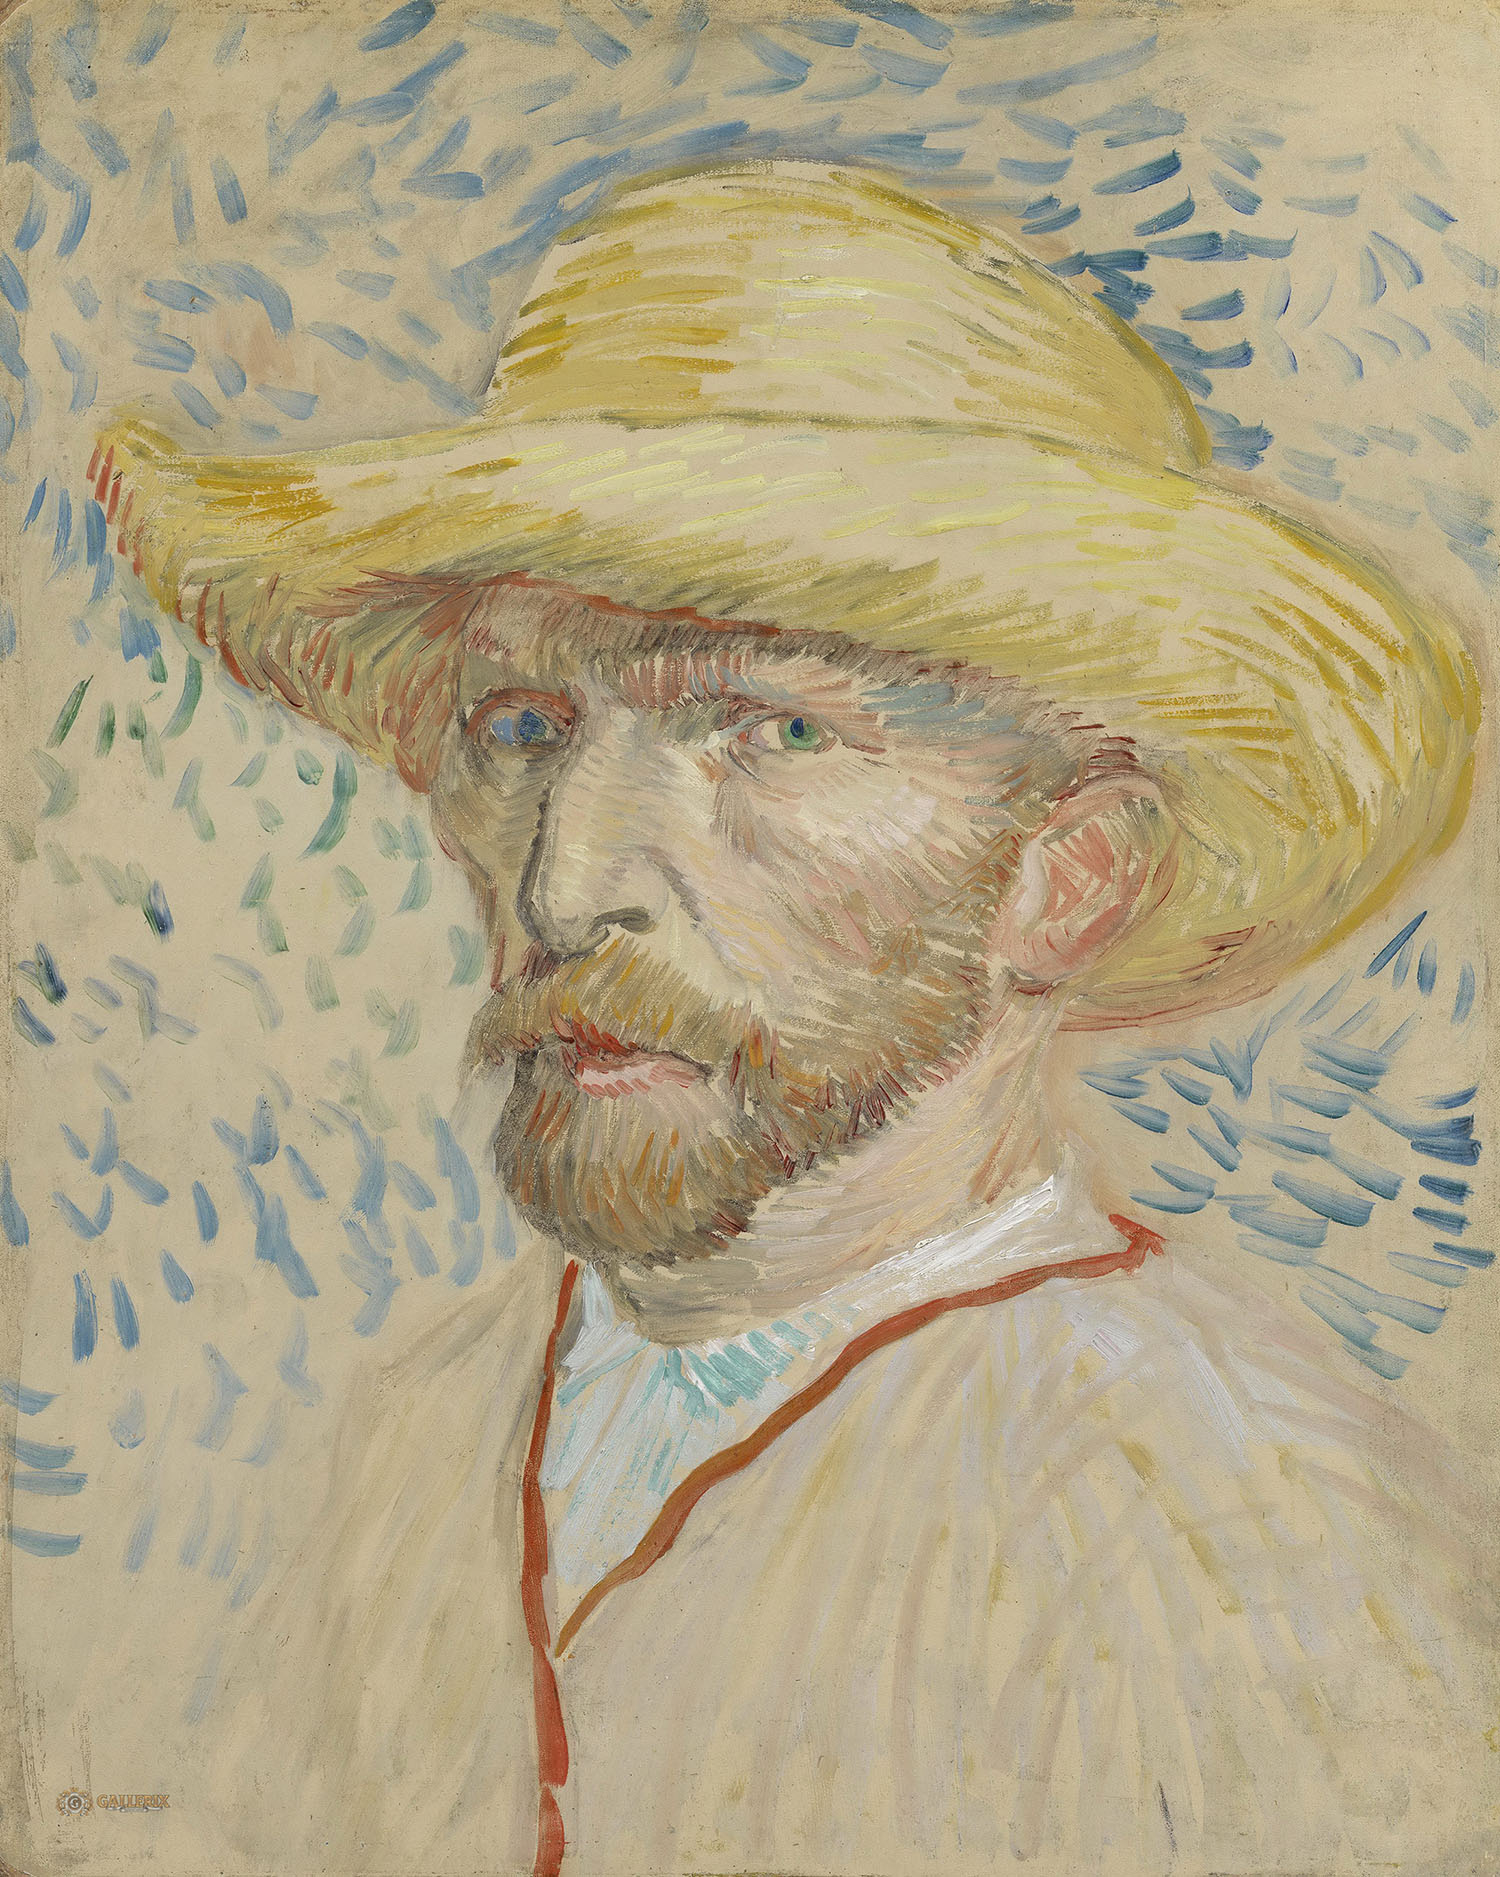 Винсент Ван Гог. "Автопортрет в соломенной шляпе". 1887. Музей Ван Гога, Амстердам.